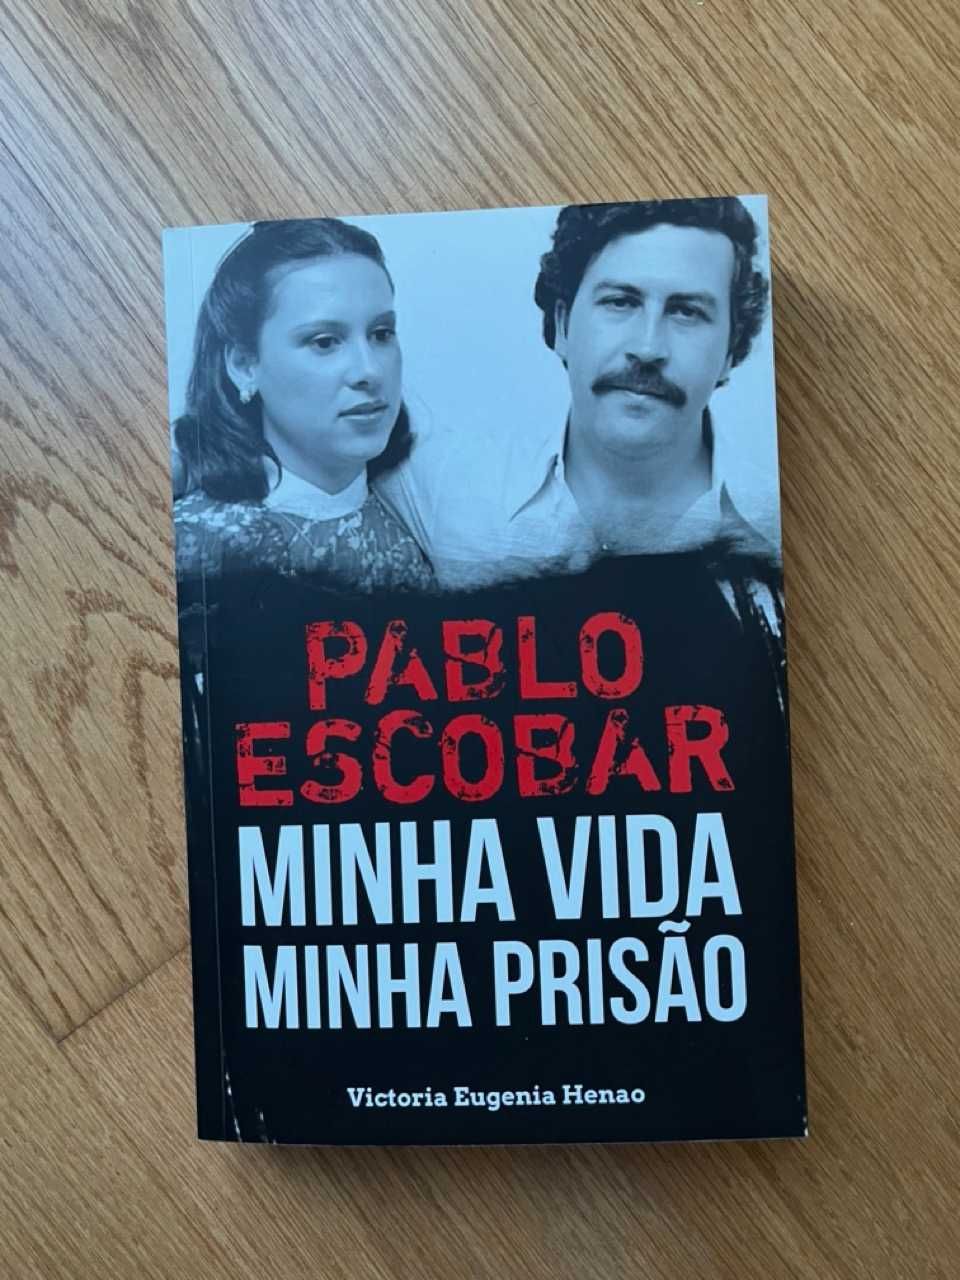 Livro "Pablo Escobar - Minha Vida, Minha Prisão"